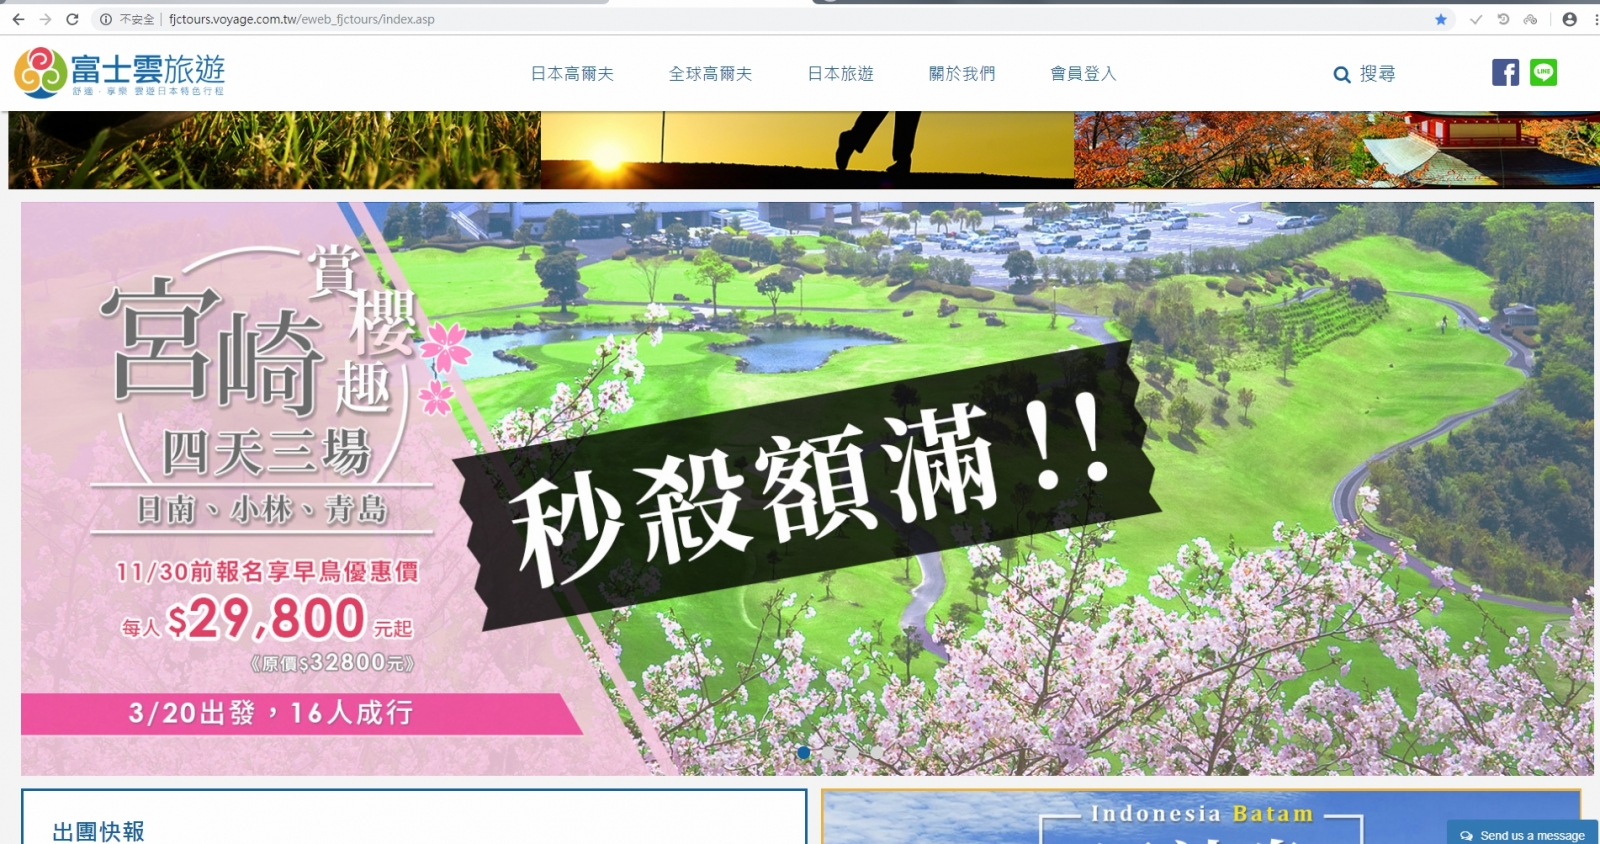 明年3月20日宮崎的賞櫻高爾夫行程，一推出就秒殺完售了。